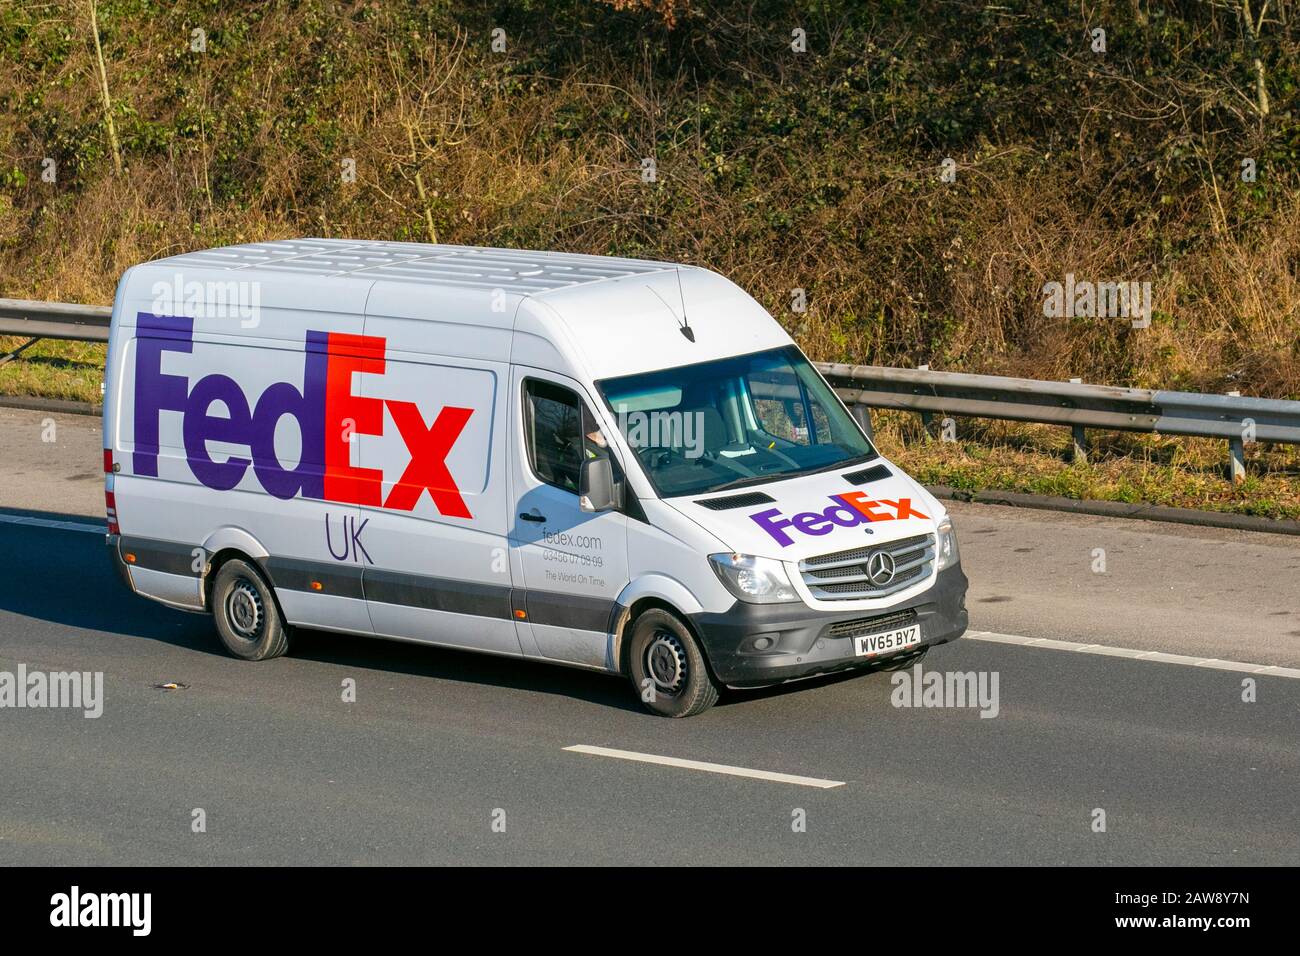 FEDEX express américain multinational livraison services camion Mercedes Benz Sprinter van sur la M61, Manchester Royaume-Uni; circulation de véhicule, transport, trafic d'autoroute. Banque D'Images